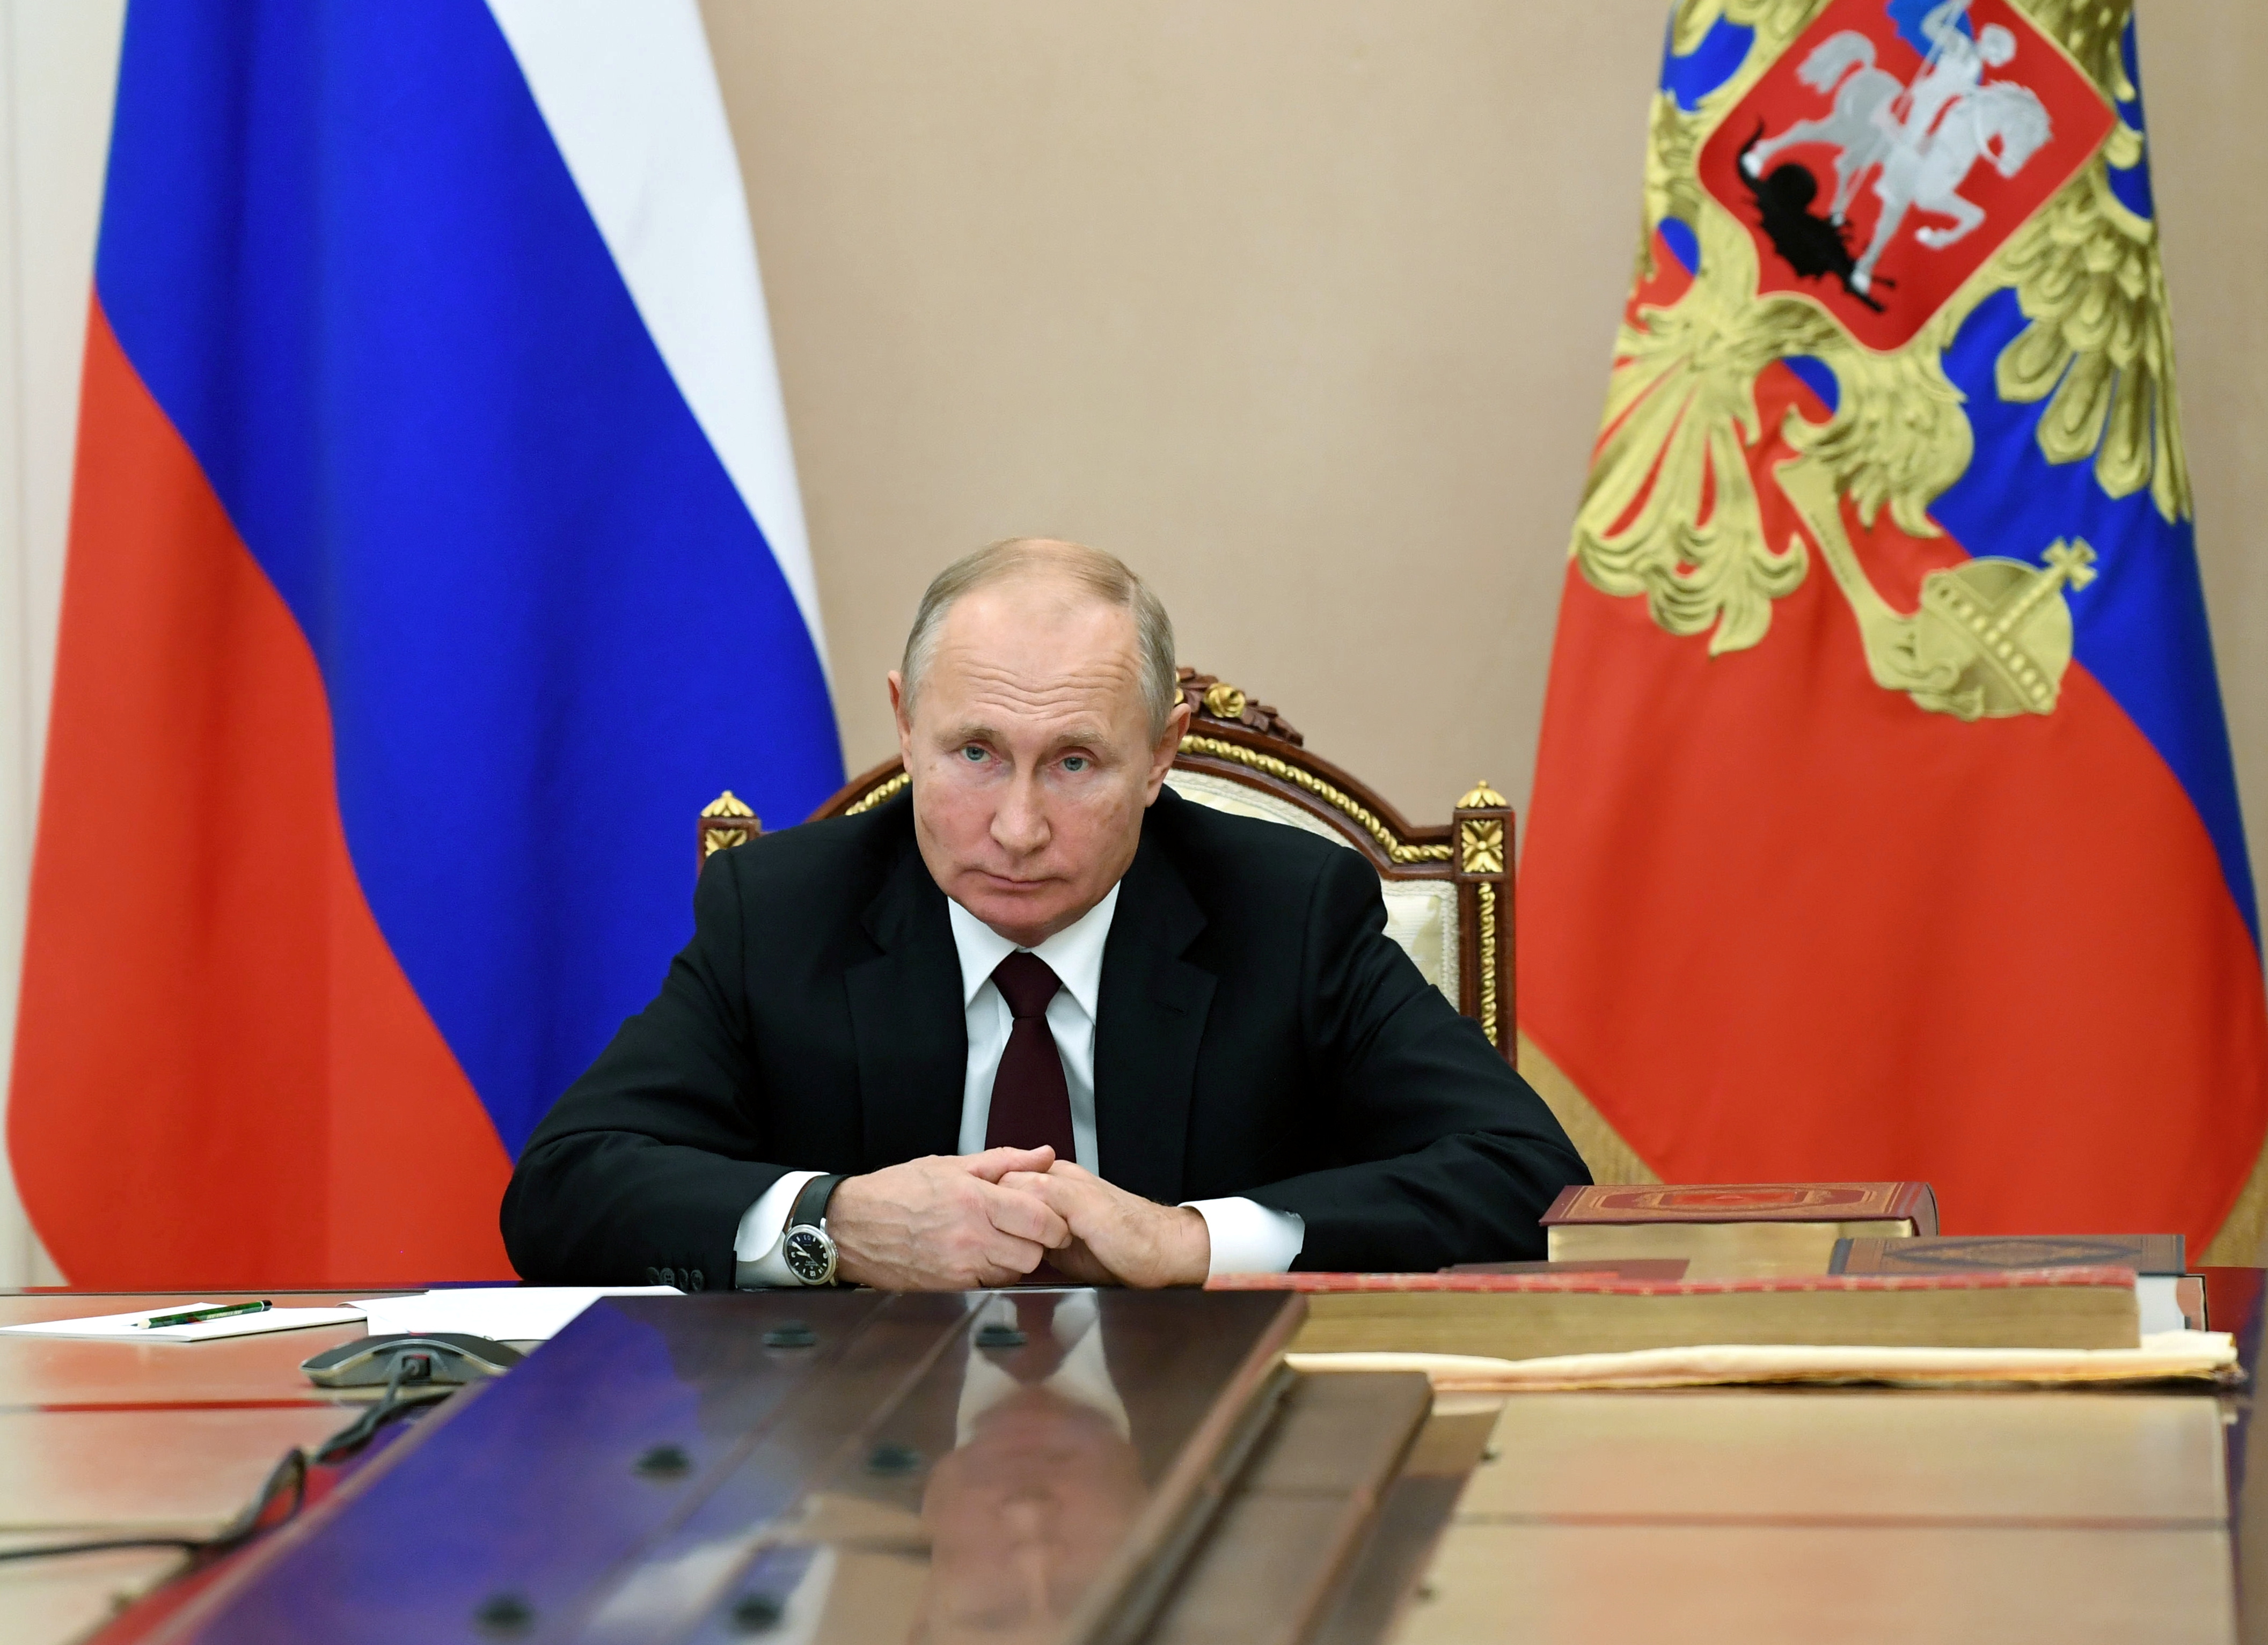 El presidente ruso Vladimir Putin asiste a una reunión con jefes de confesiones religiosas en el Día de la Unidad Nacional, a través de una videoconferencia en Moscú, el pasado 4 de noviembre de 2020. EN la mayoría de las fotografías aparece sujetándose las manos, algo que hace crecer las especulaciones sobre un posible Parkinson (Reuters)